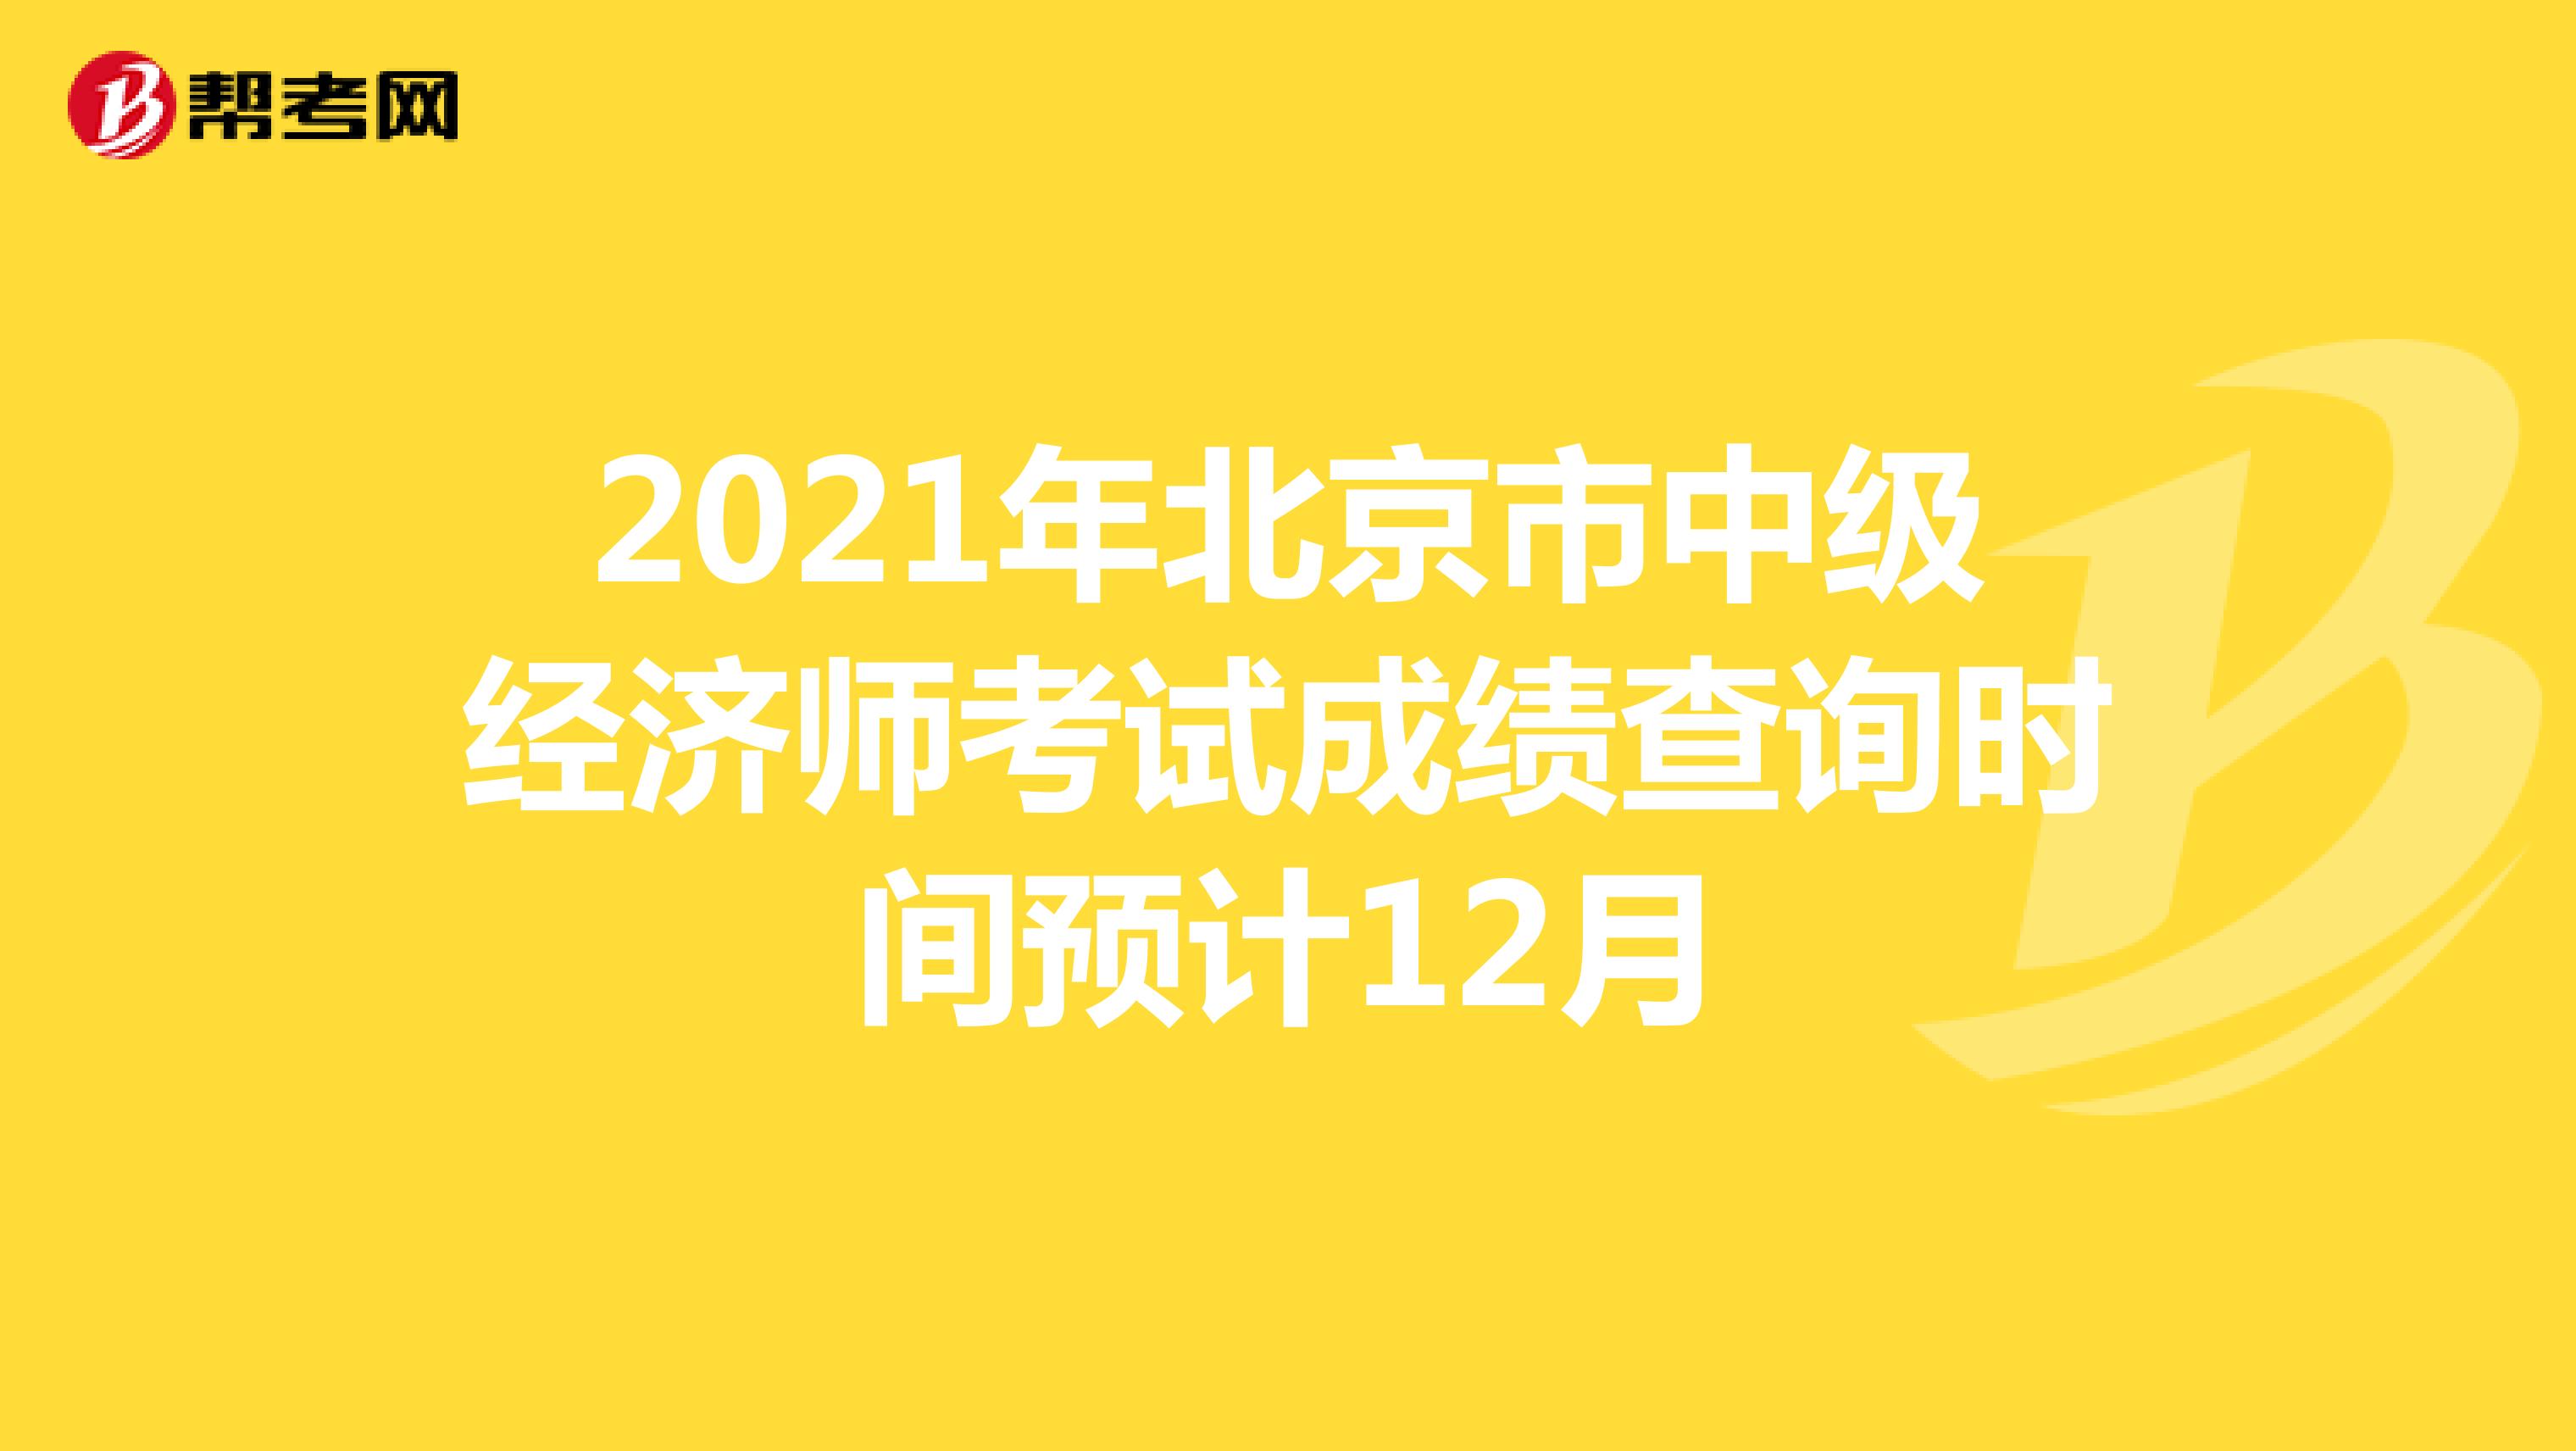 2021年北京市中级经济师考试成绩查询时间预计12月